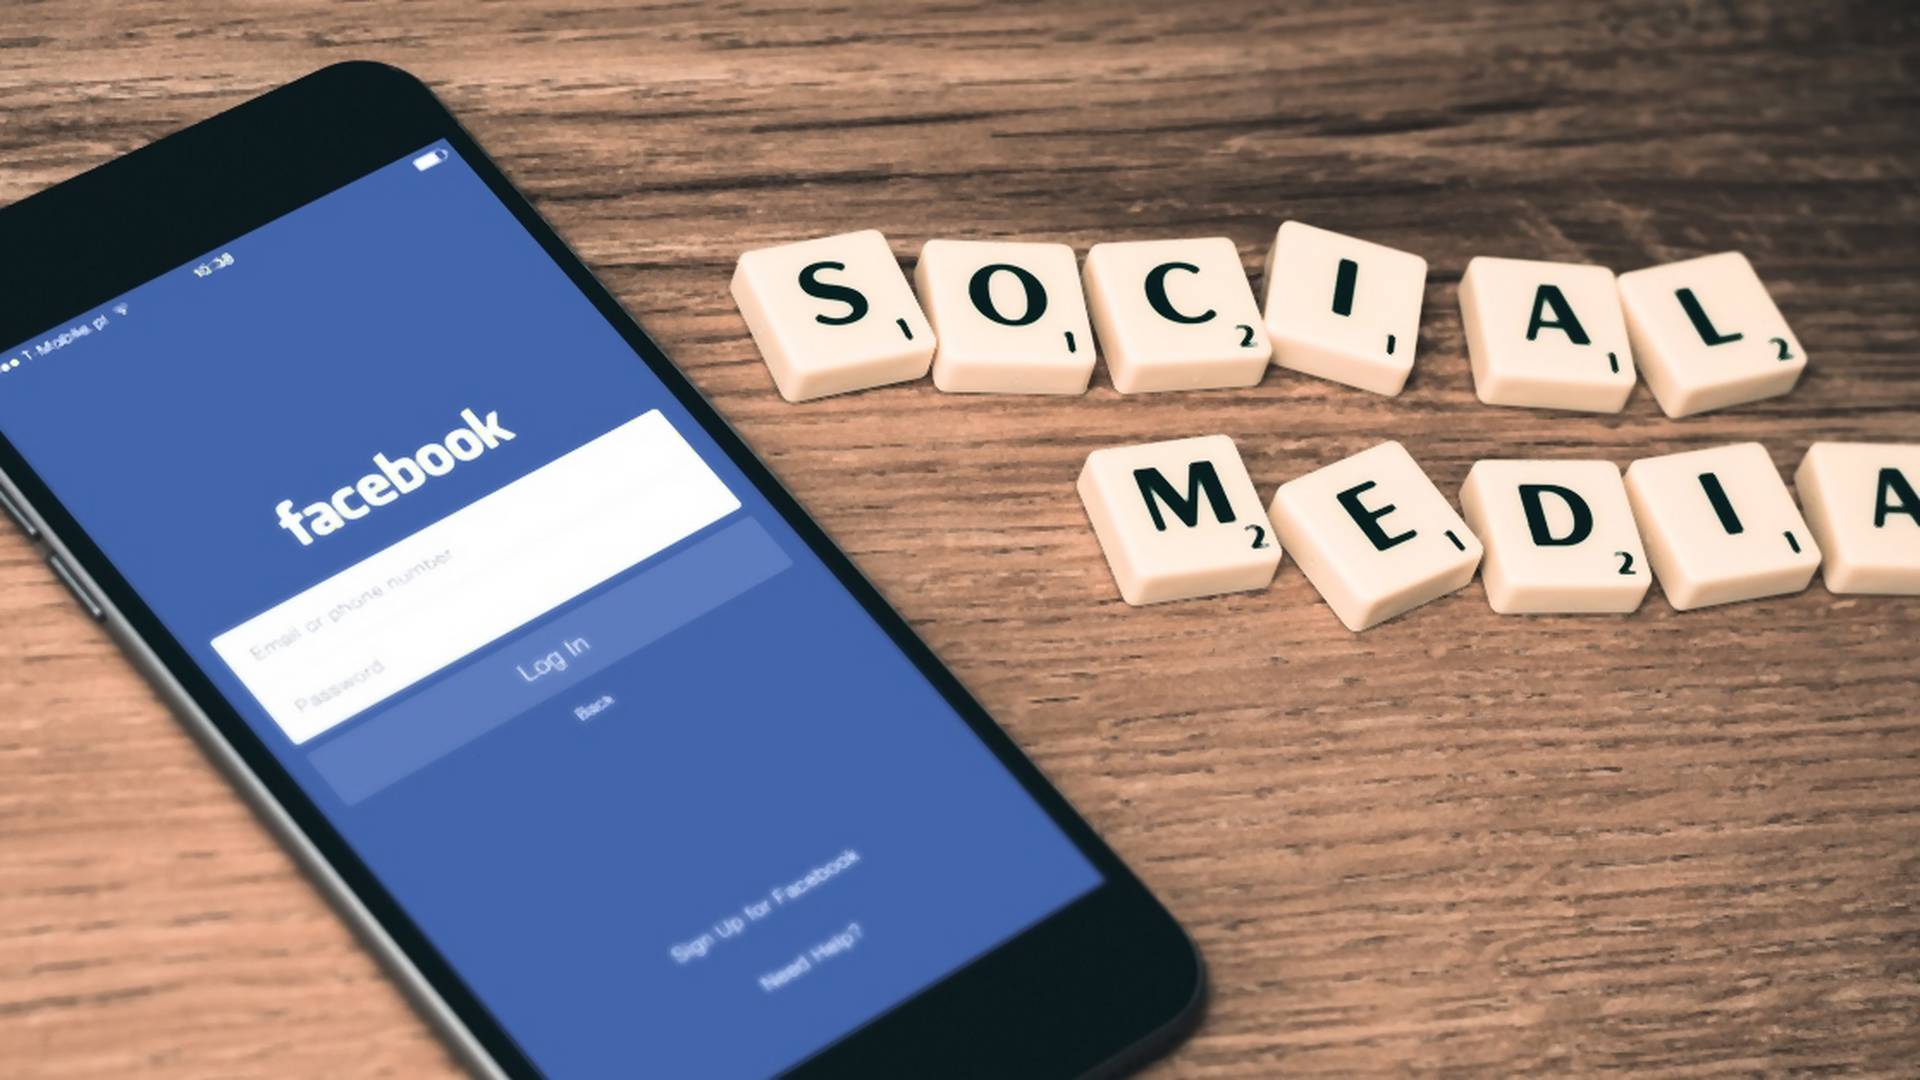 Facebook chystá prevratnú novinku: Umožniť má komunikáciu pomocou myšlienok